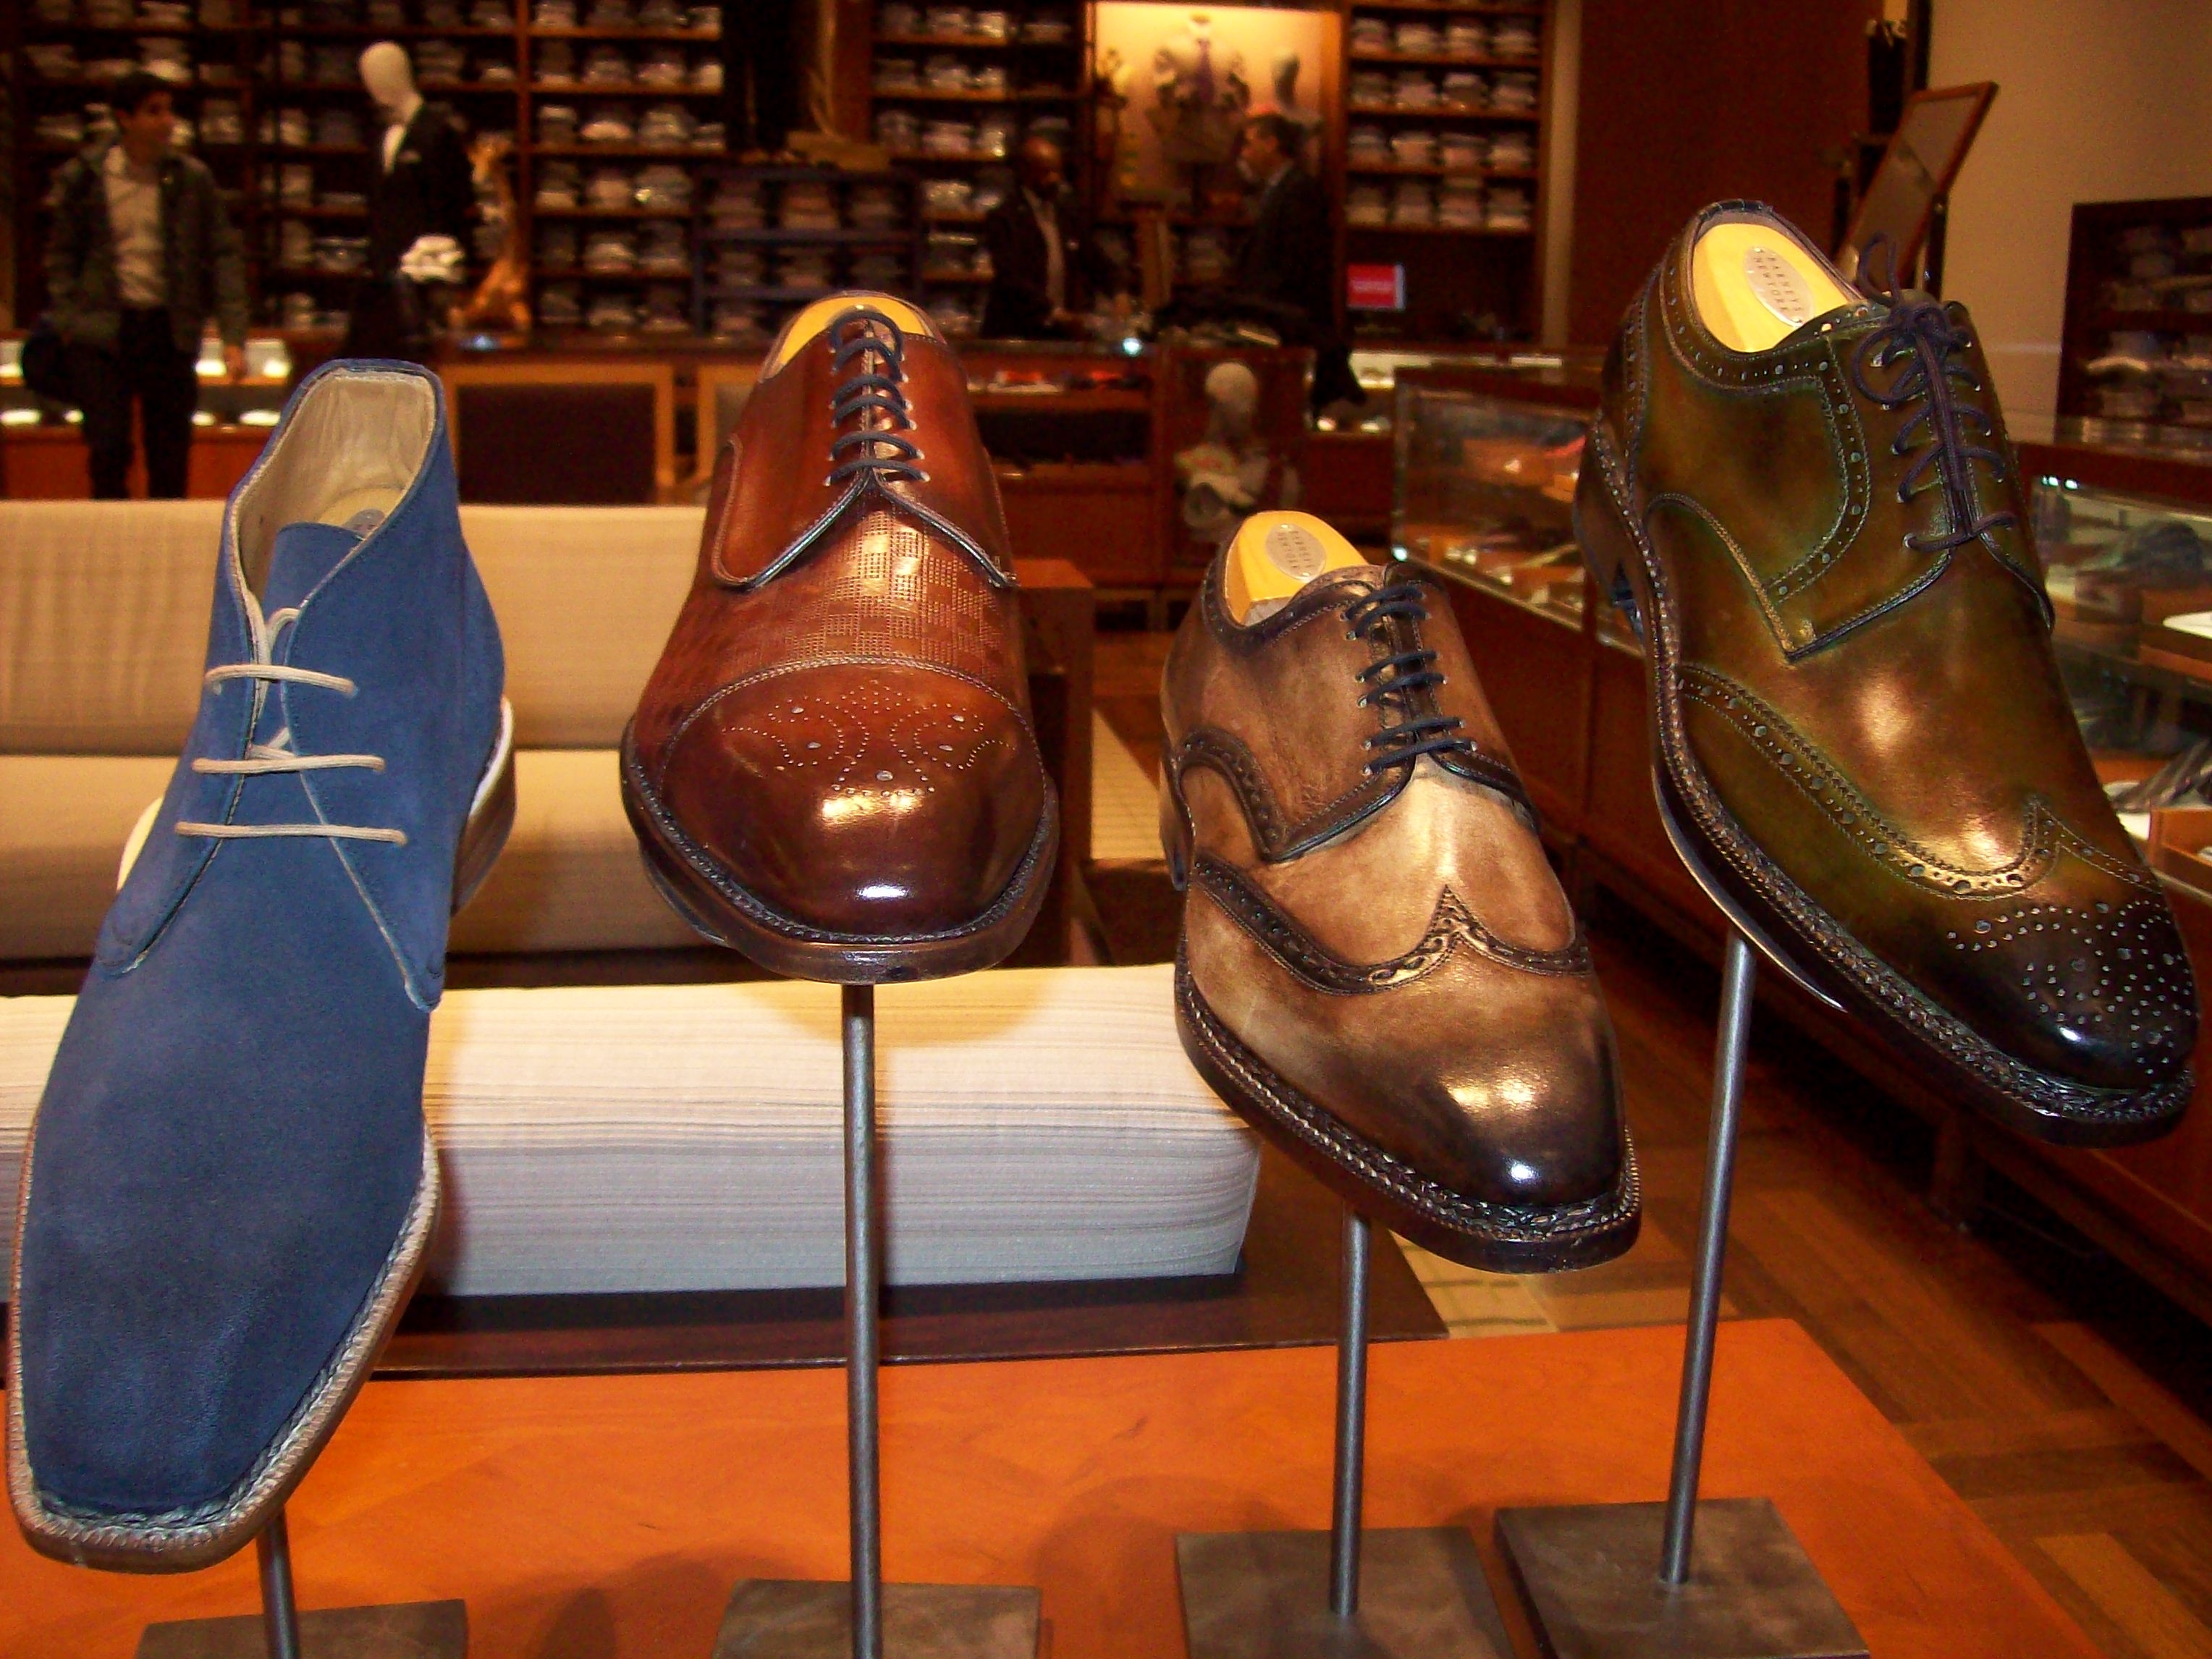 Лучшая качественная обувь. Изготовитель обуви. Итальянская обувь. Производство обуви. Португальская обувная мастерская.